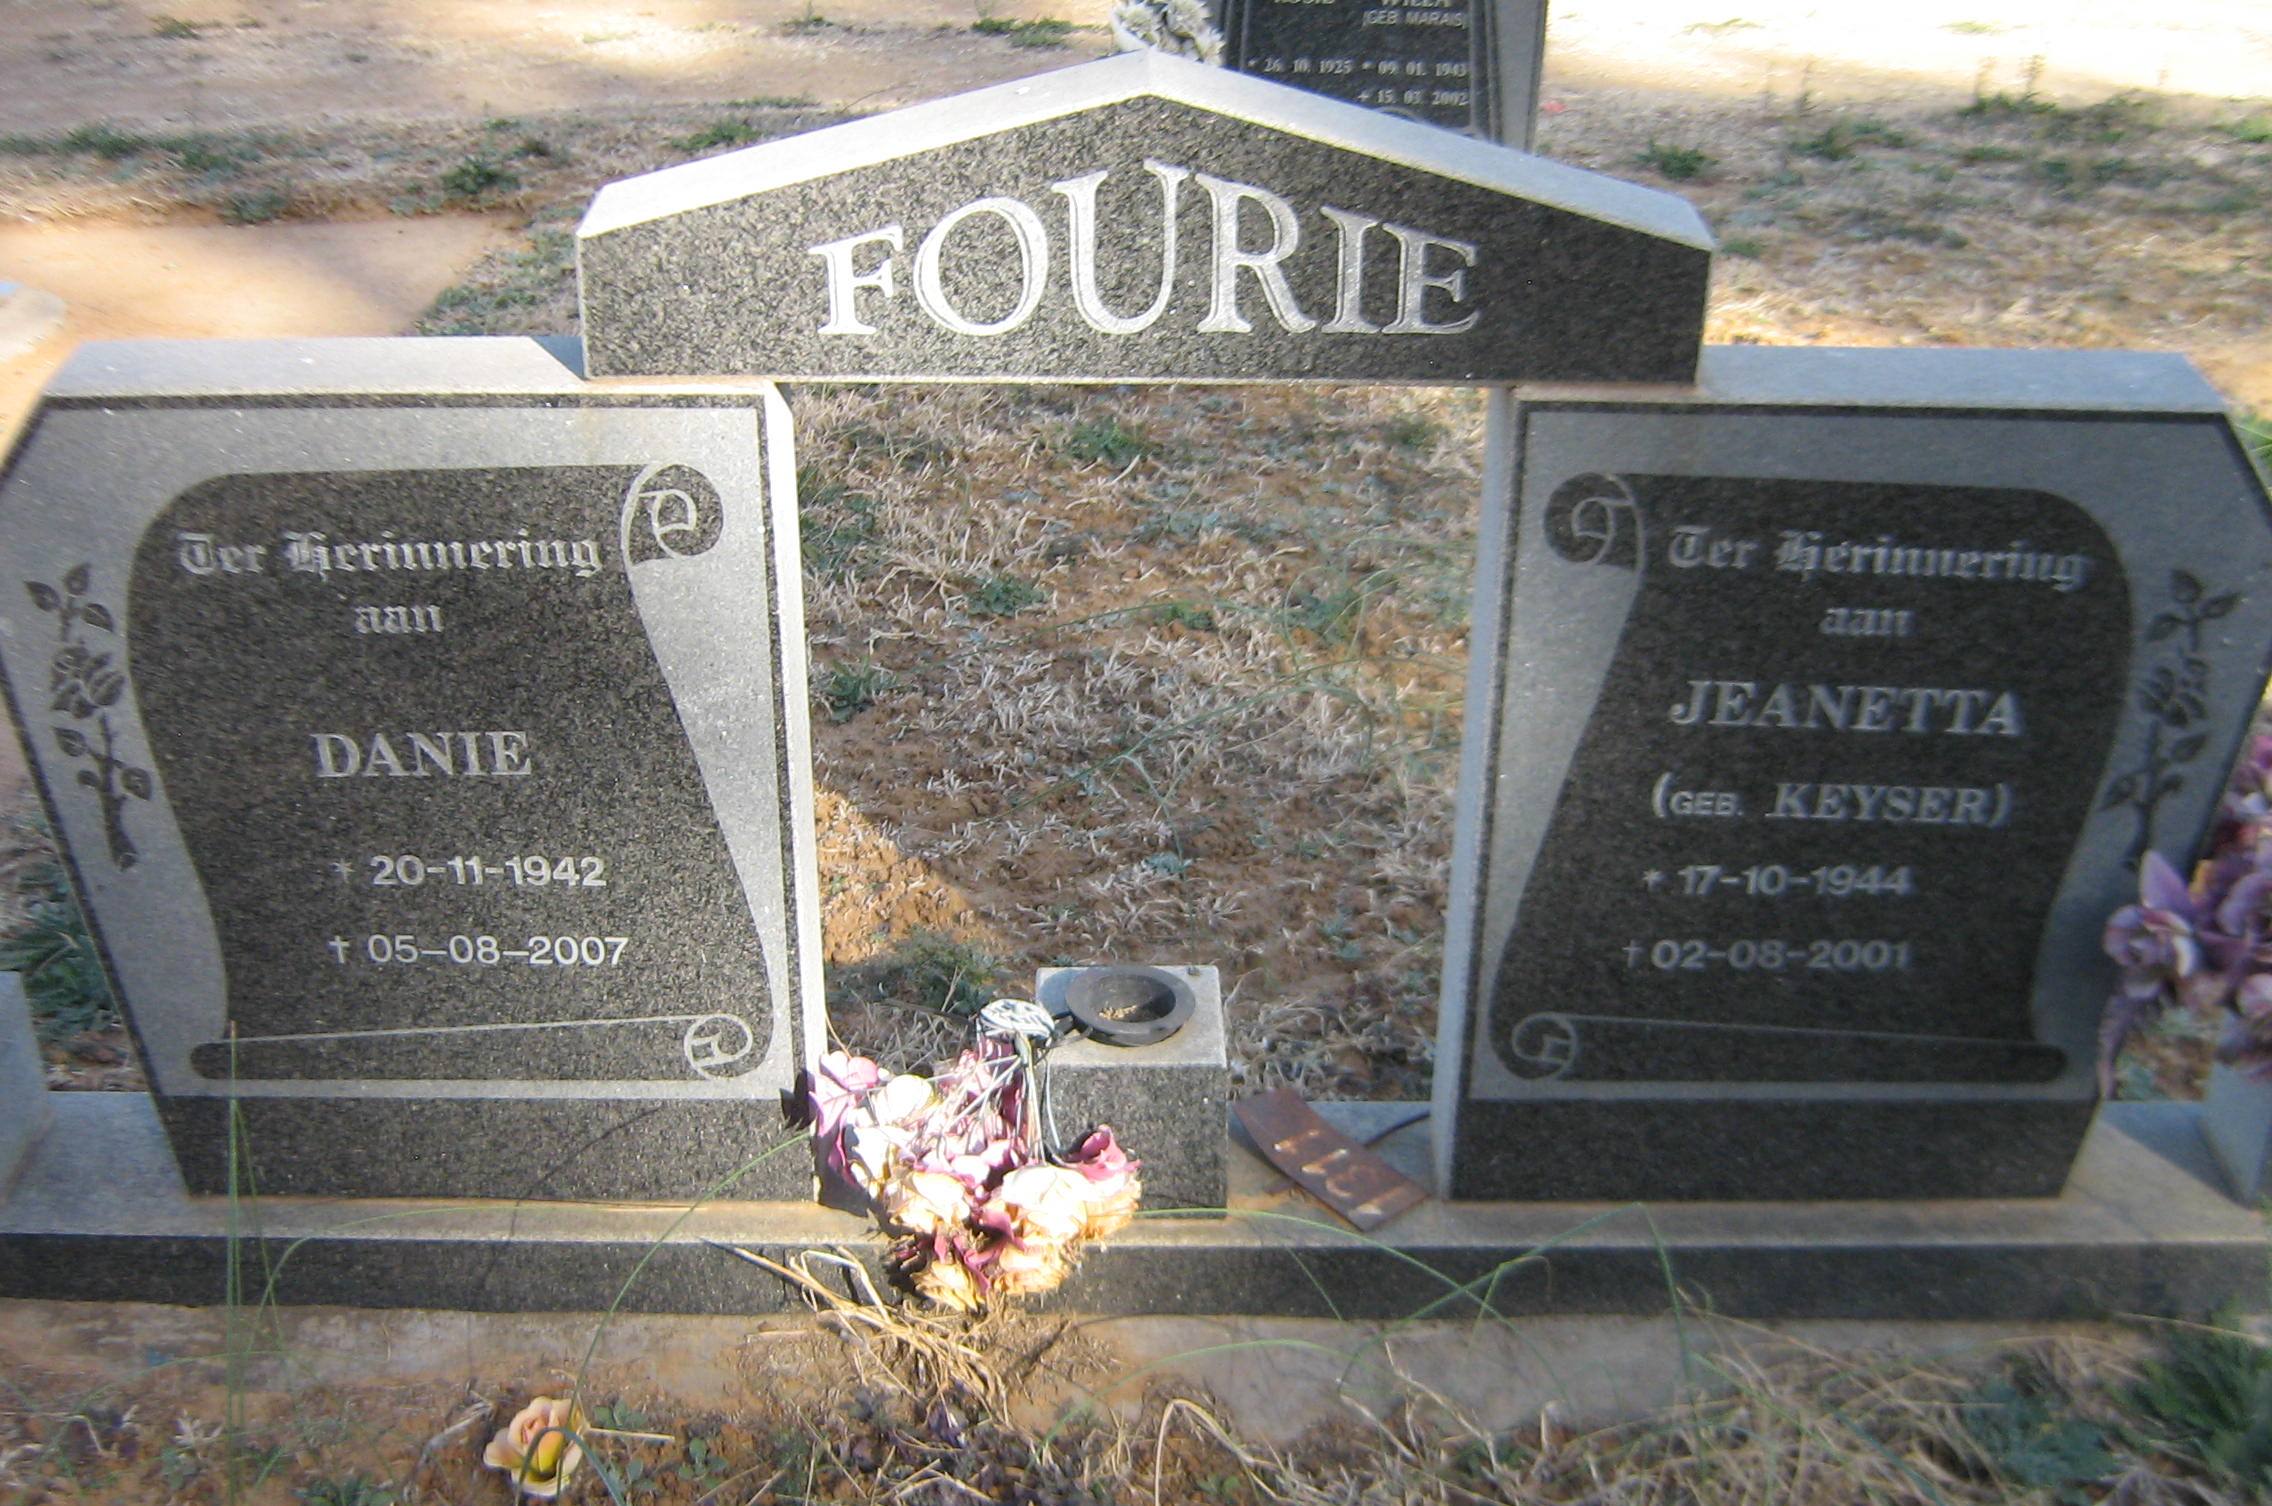 FOURIE Danie 1942-2007 & Jeanetta KEYSER 1944-2001